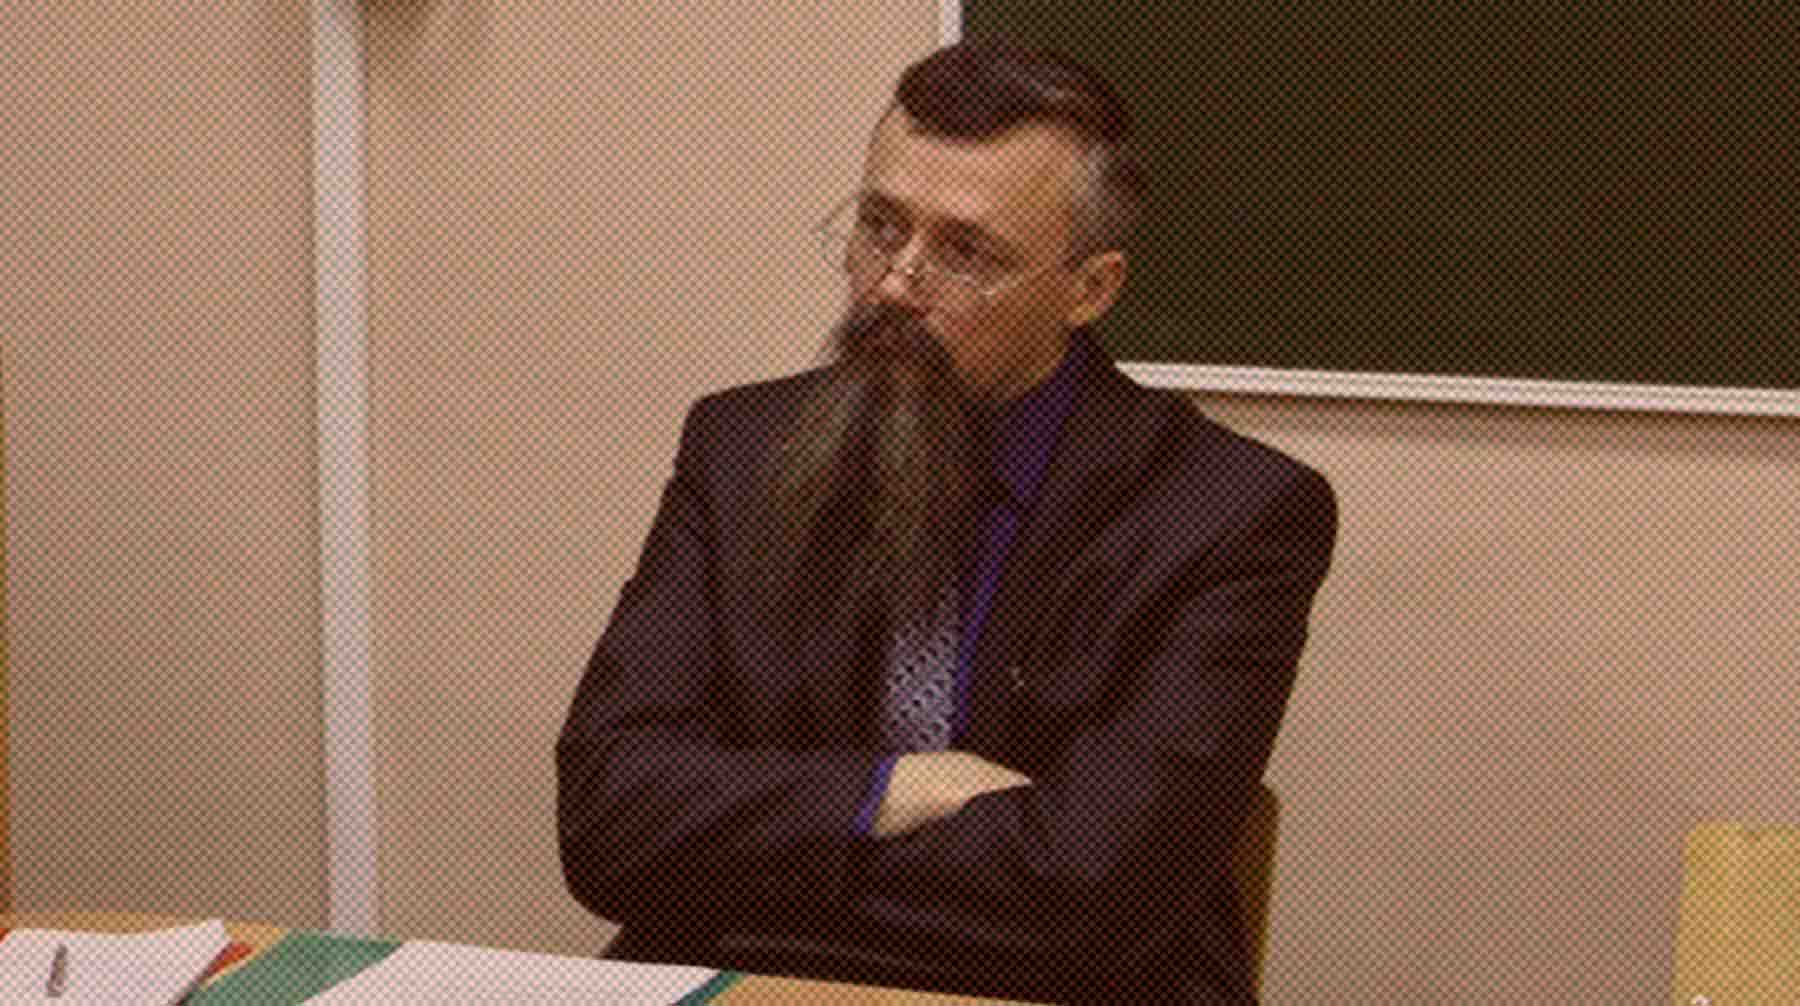 Олег Сыромятников не стал прерывать занятие, несмотря на просьбы студентов и звуки выстрелов Олег Сыромятников